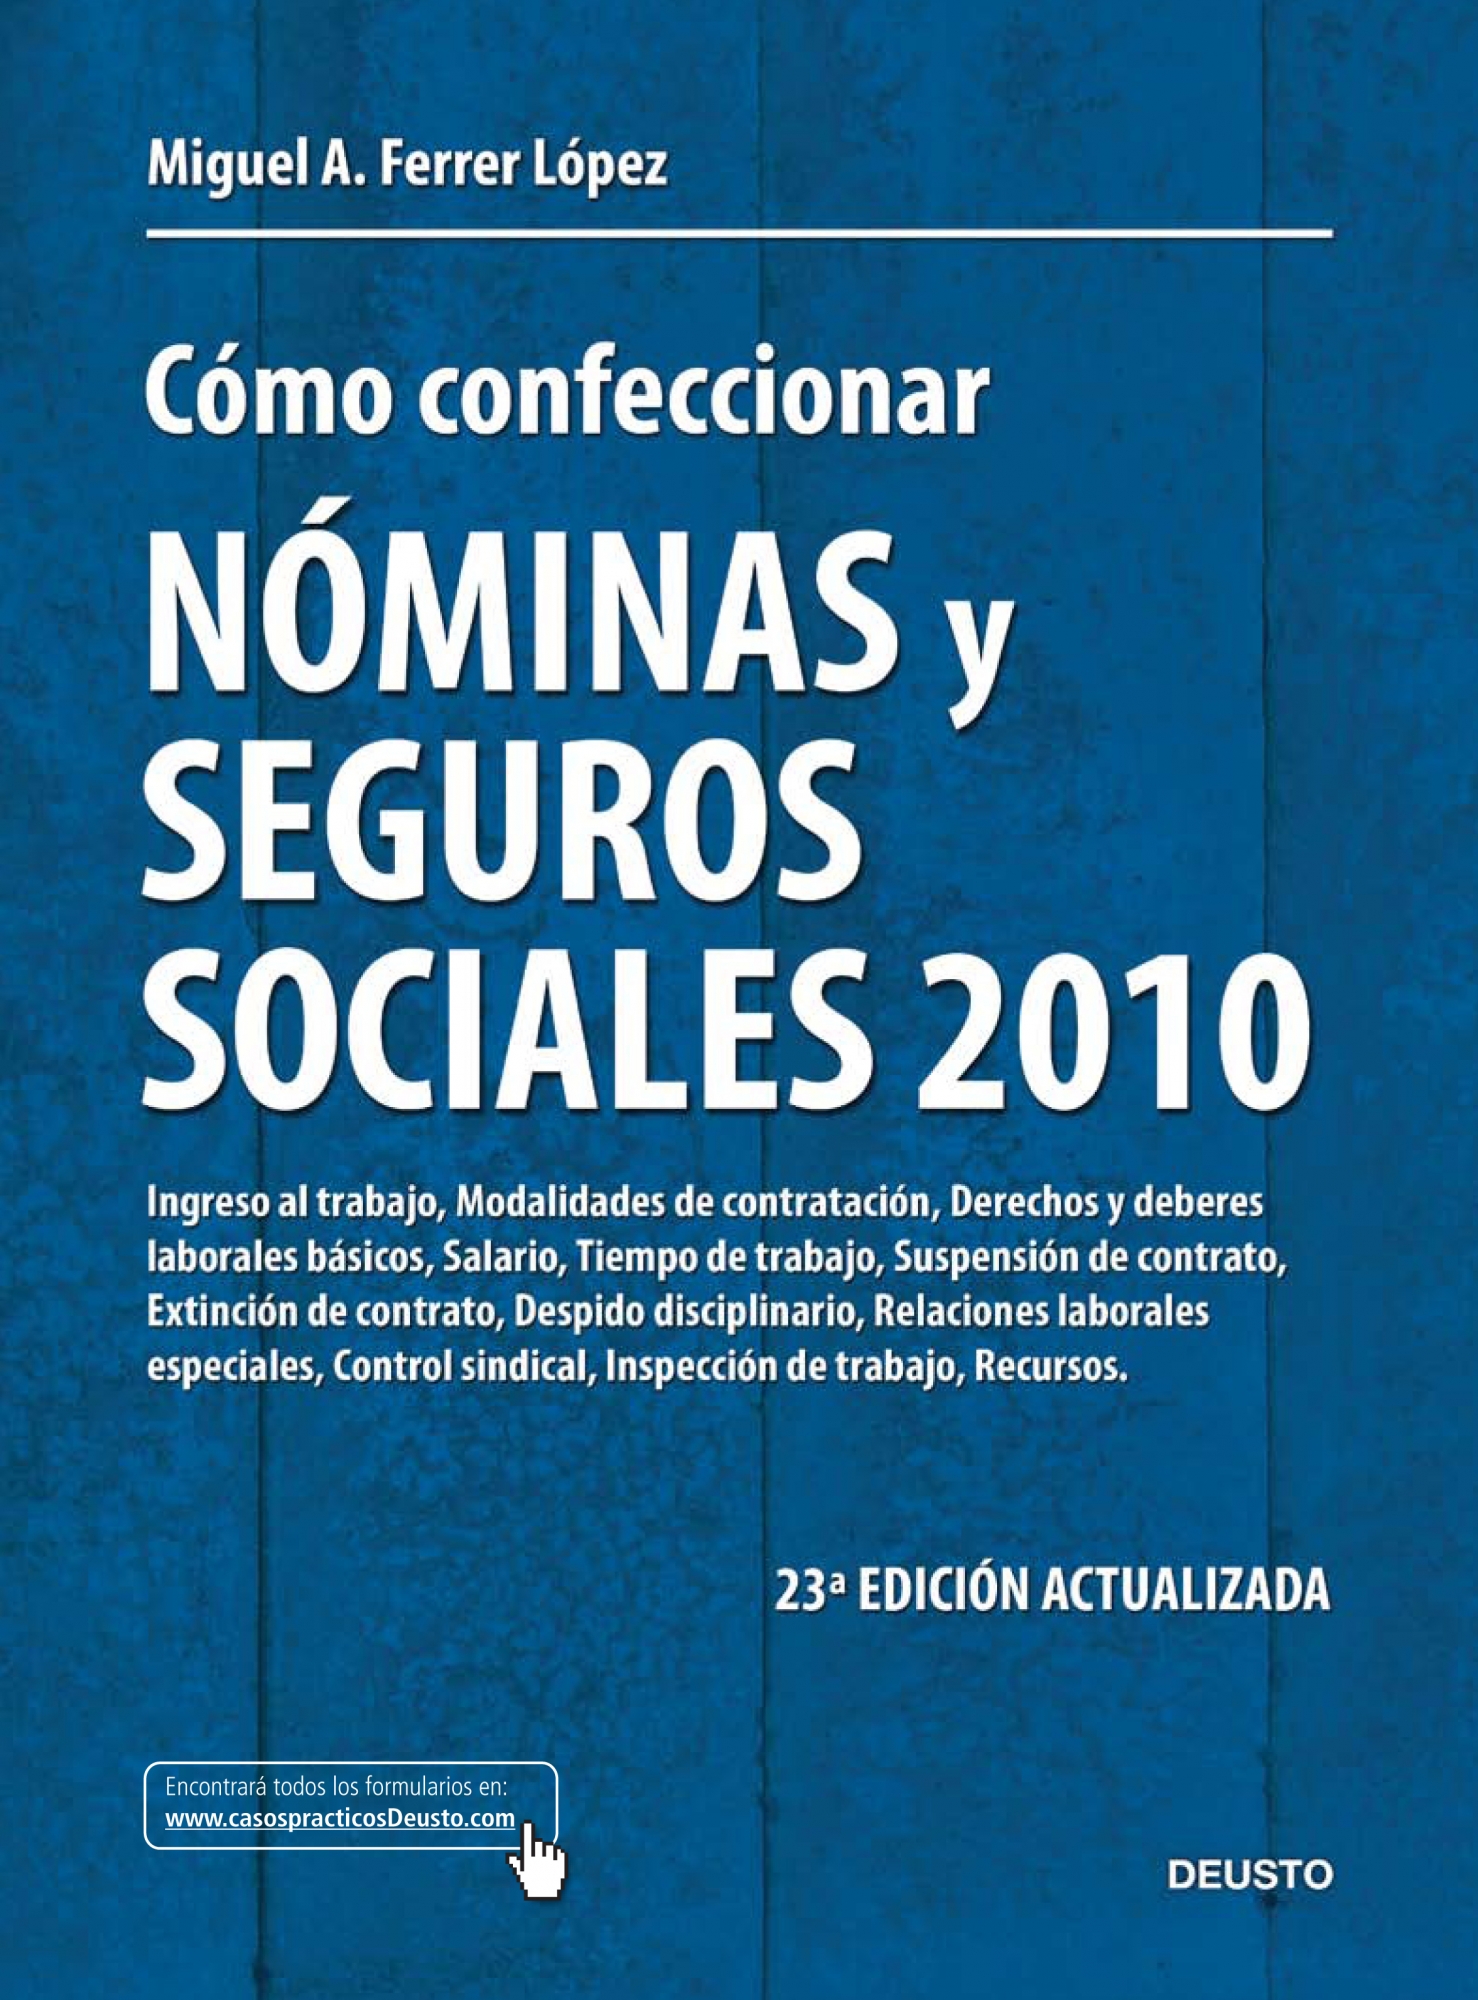 Cómo confeccionar nóminas y seguros sociales 2010